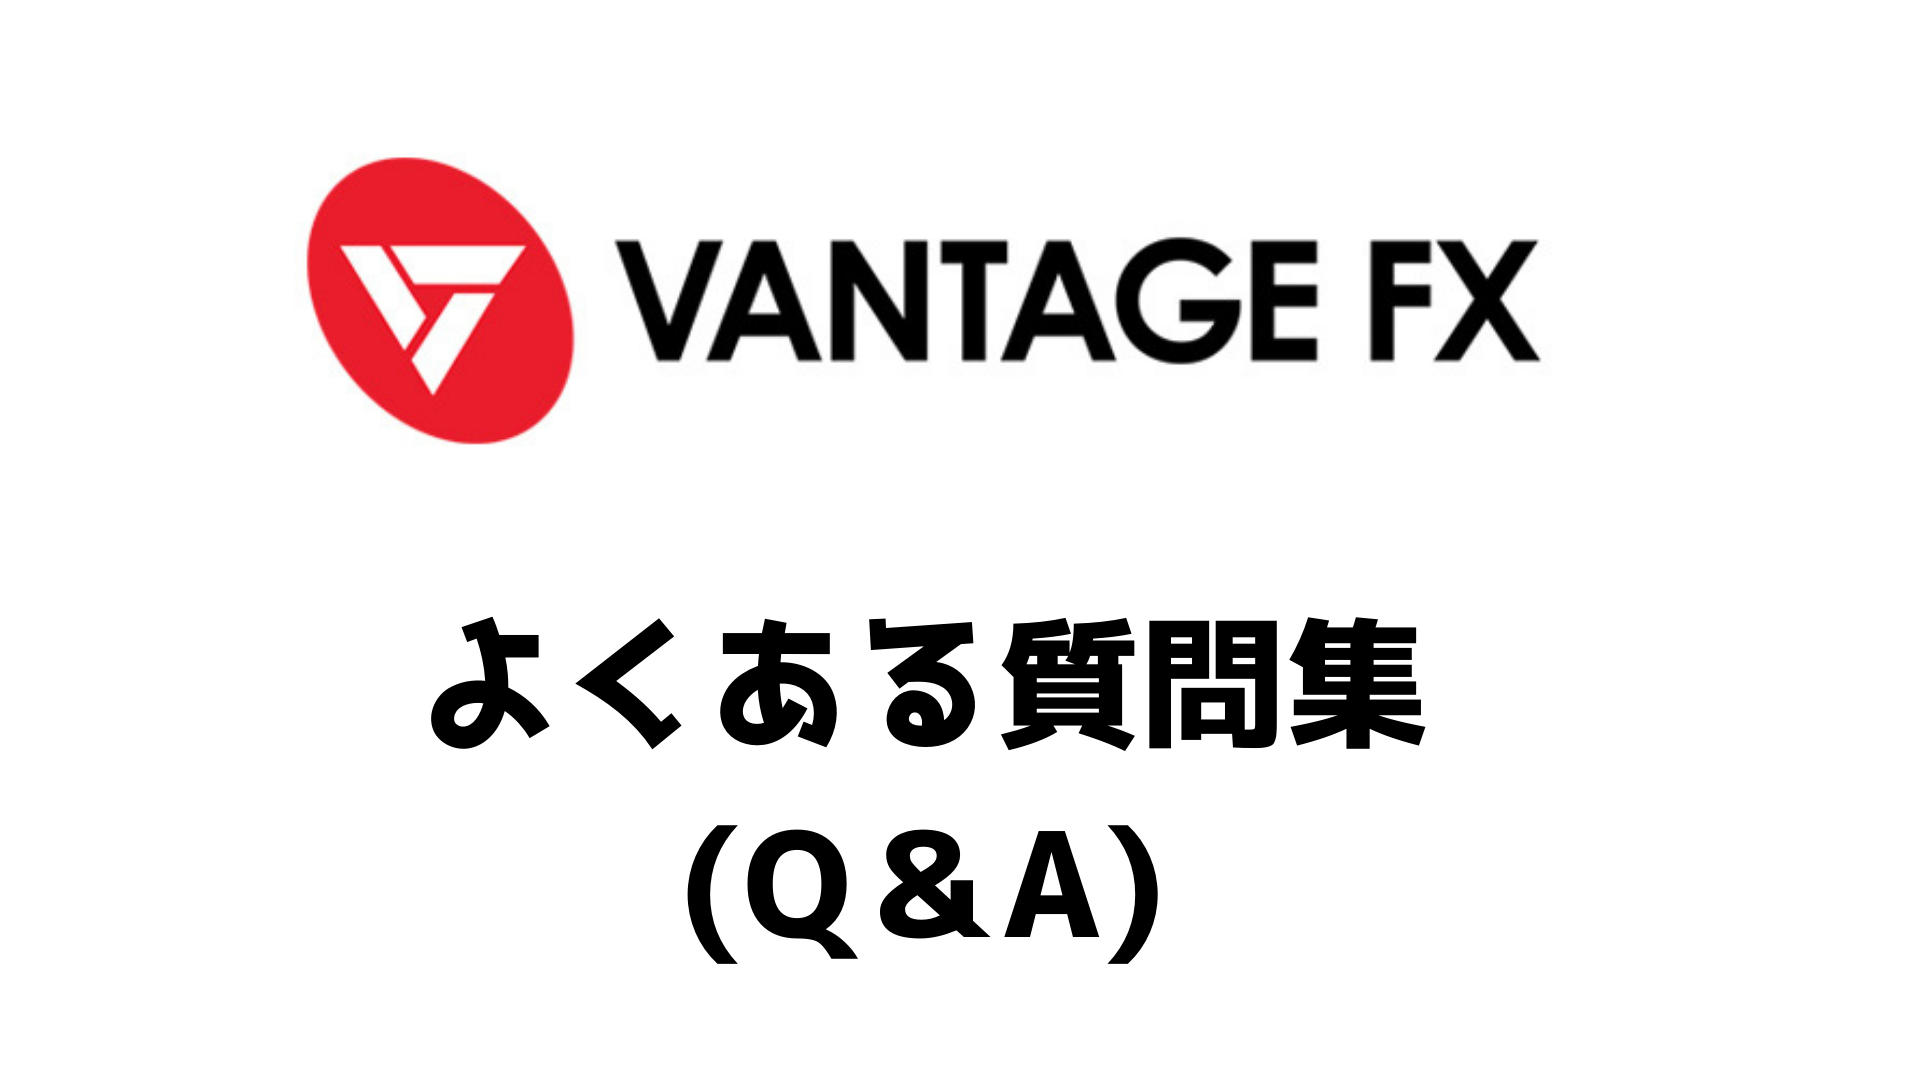 Vantagefx ﾊﾞﾝﾃｰｼﾞfx についてよくある質問 Q A集 じなキャッシュ 海外fx 仮想通貨